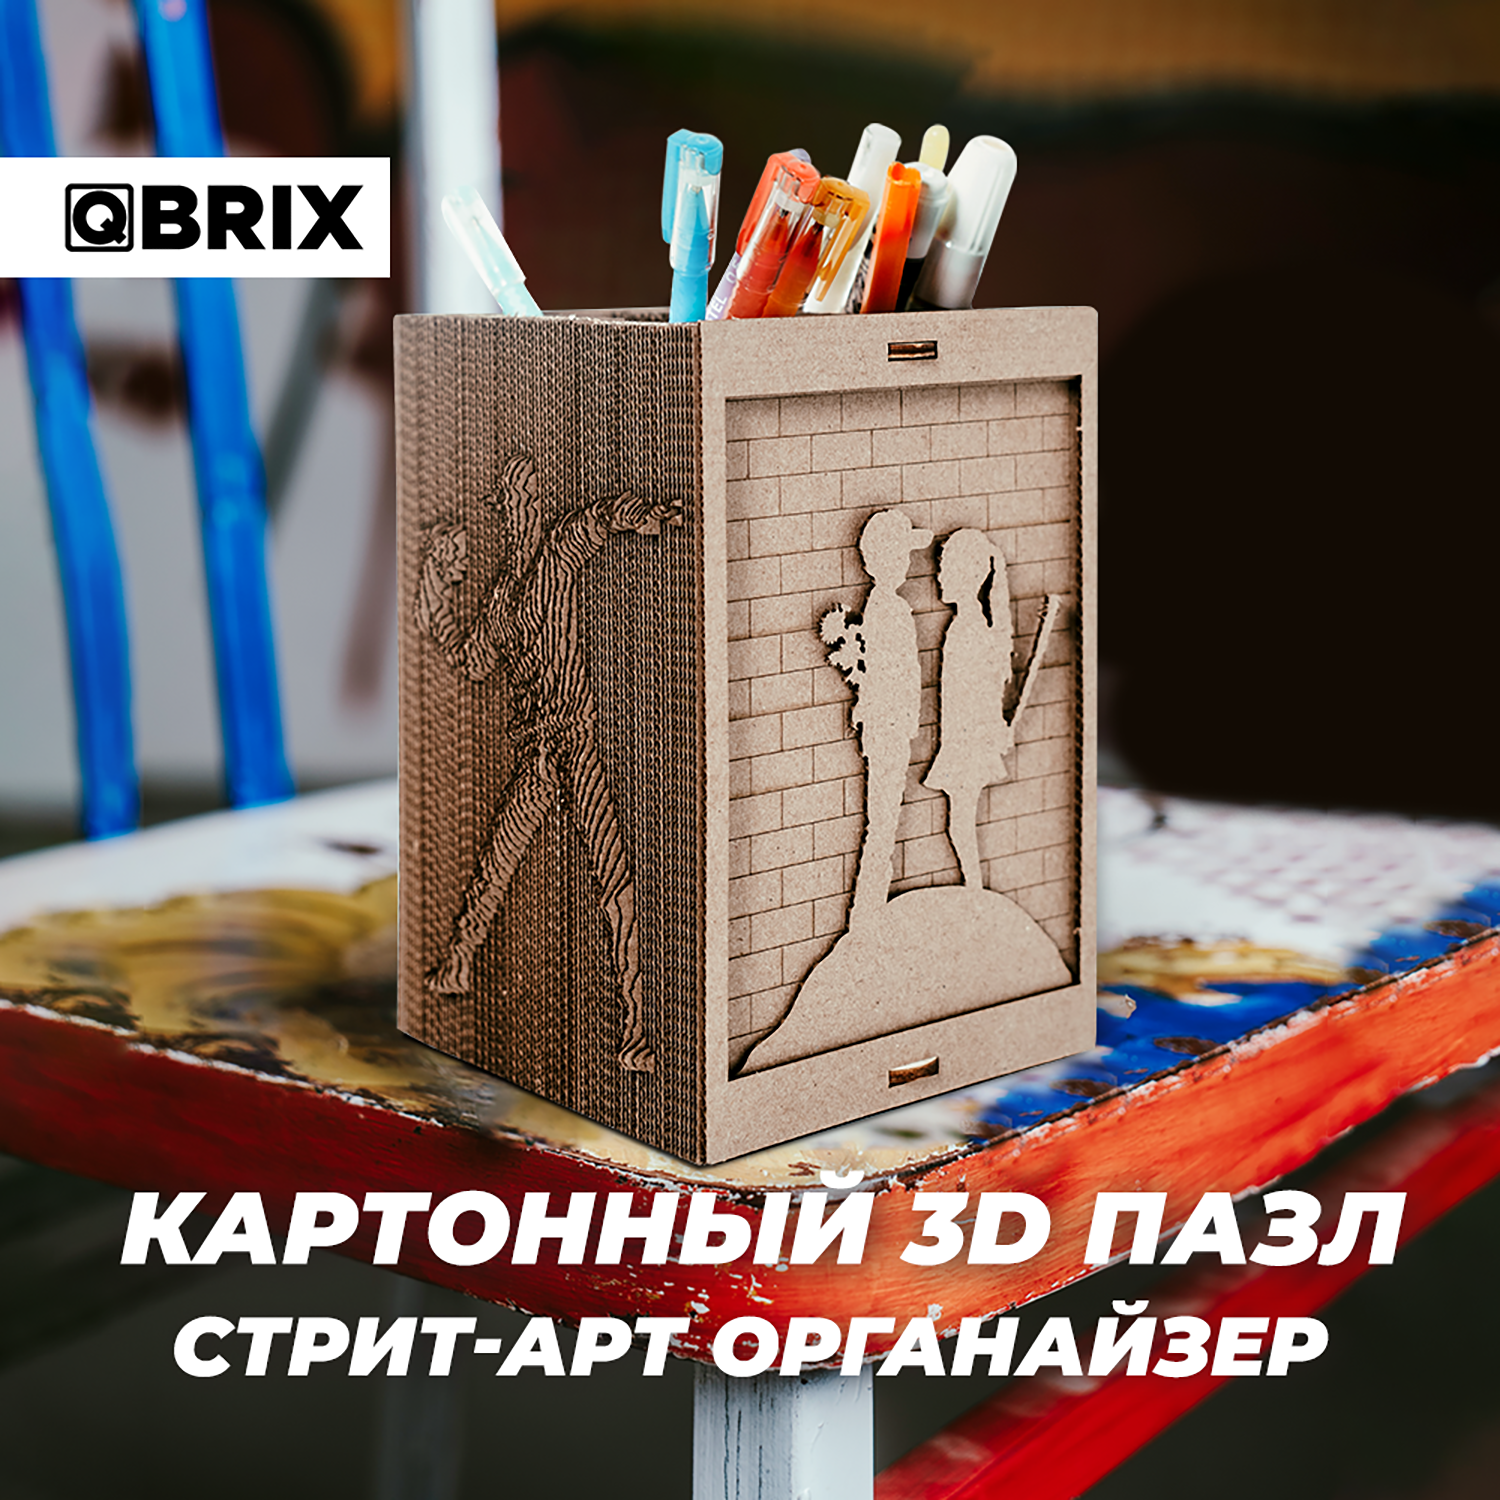 Конструктор QBRIX 3D картонный Стрит-Арт органайзер 20007 20007 - фото 4